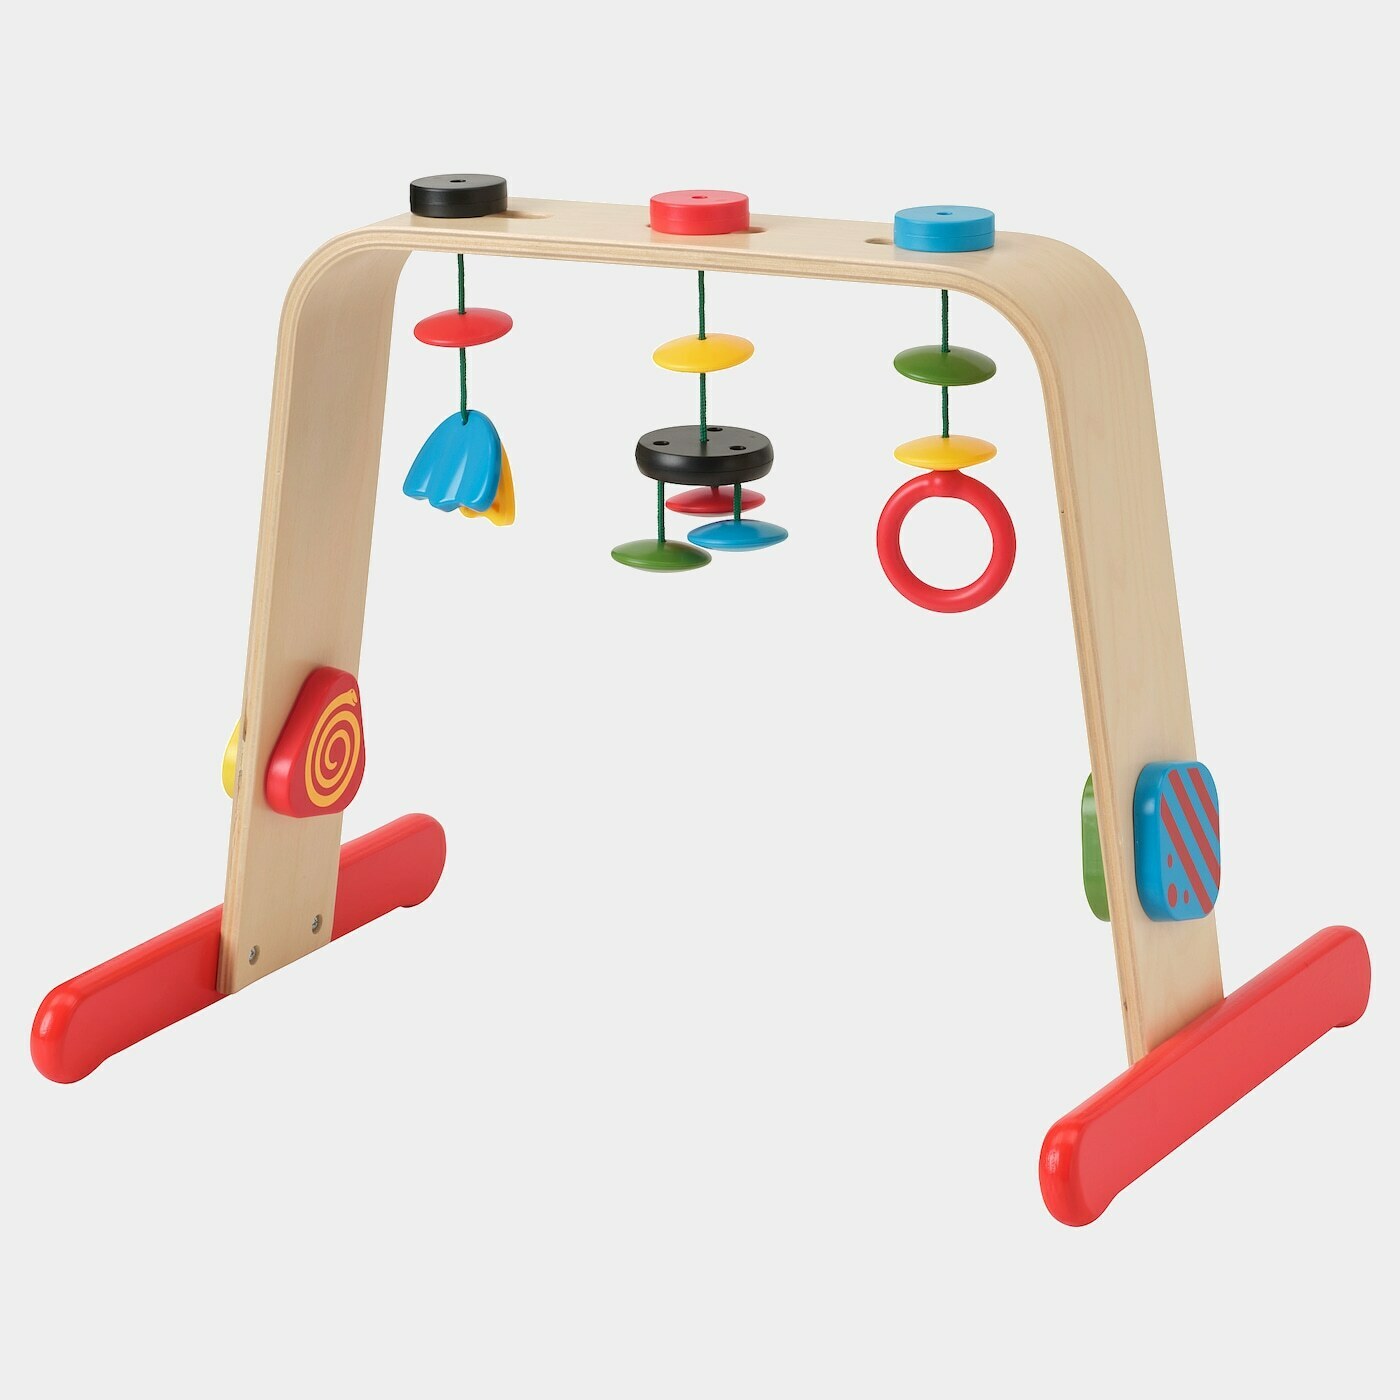 LEKA Babygymnastikcenter  - Babyspielzeug - Babyausstattung & Kinderzimmerzubehör Ideen für dein Zuhause von Home Trends. Babyausstattung & Kinderzimmerzubehör Trends von Social Media Influencer für dein Skandi Zuhause.